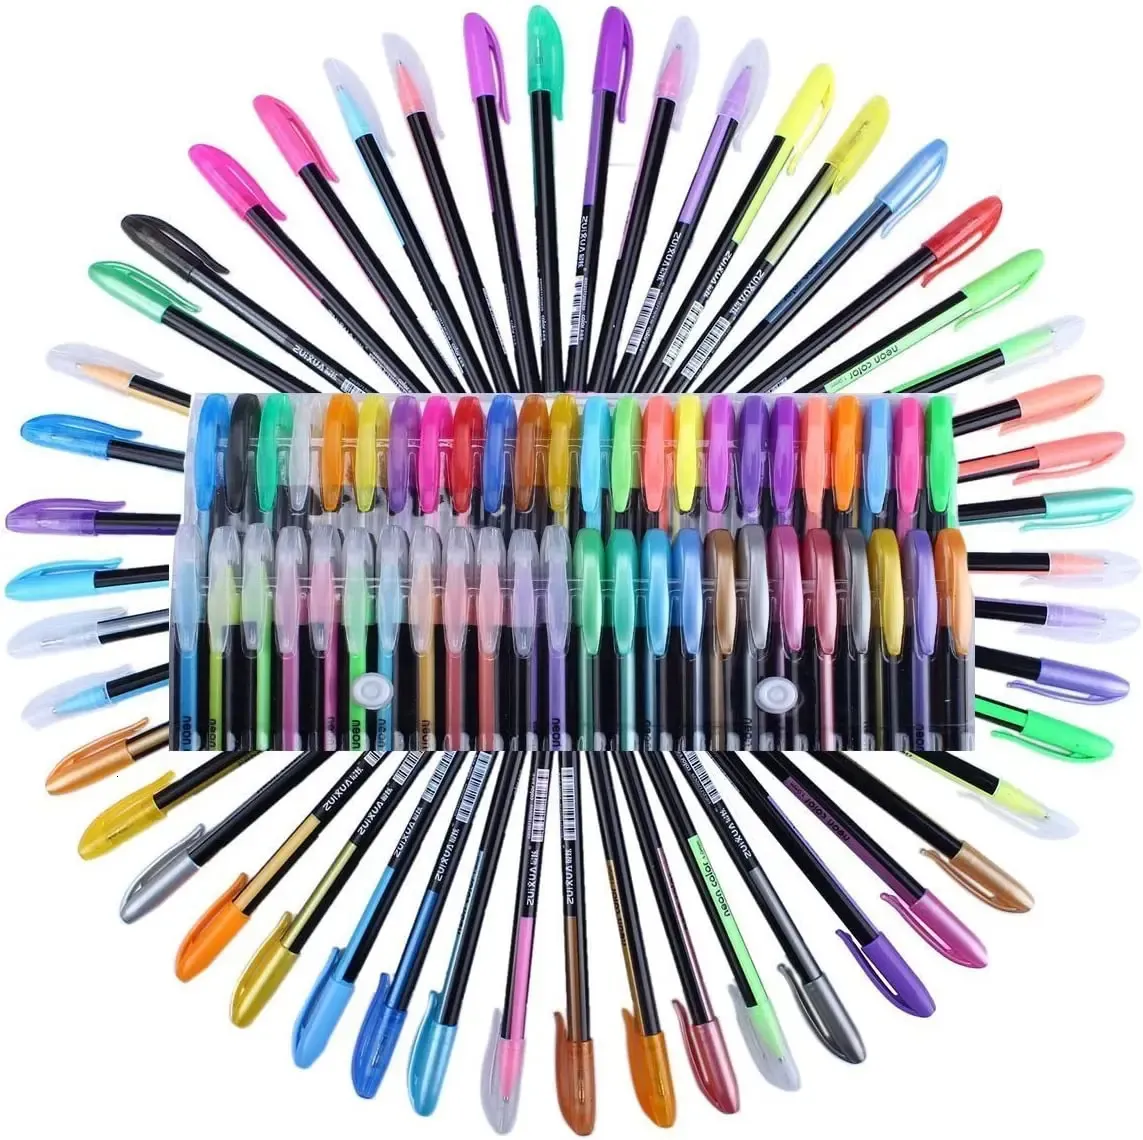 48 gel kleur pengel inkt glitter pen slimme kleur kunst markers fijne tip kit voor kinderkleurboeken tekenen journaling 240430